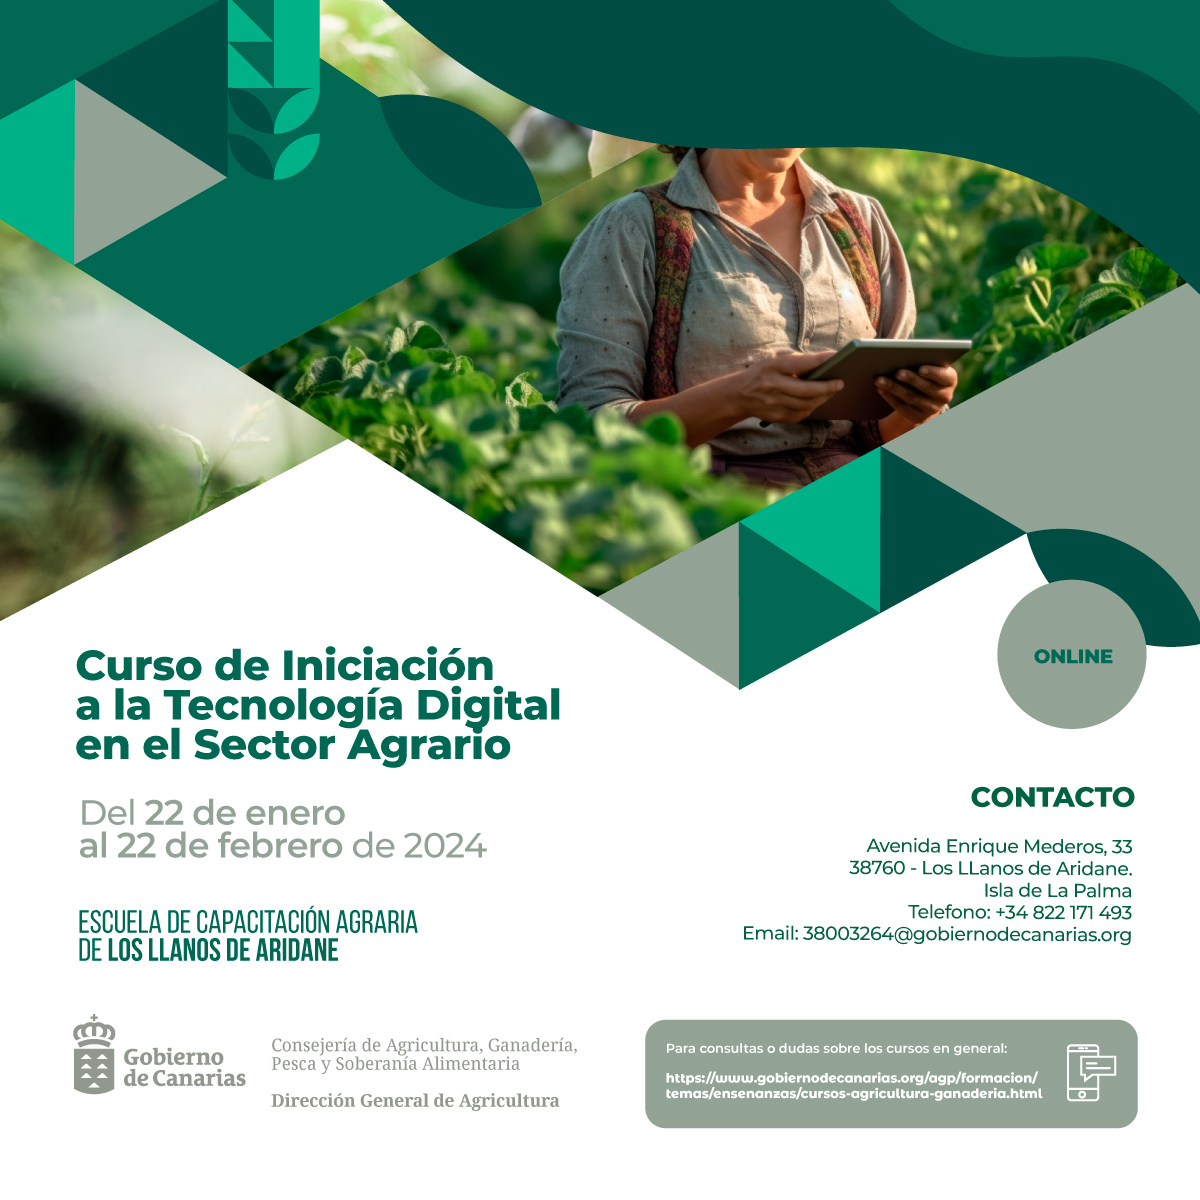 La ECA de Los Llanos de Aridane imparte un curso de tecnología digital en el sector agrario del 22 de enero al 22 de febrero